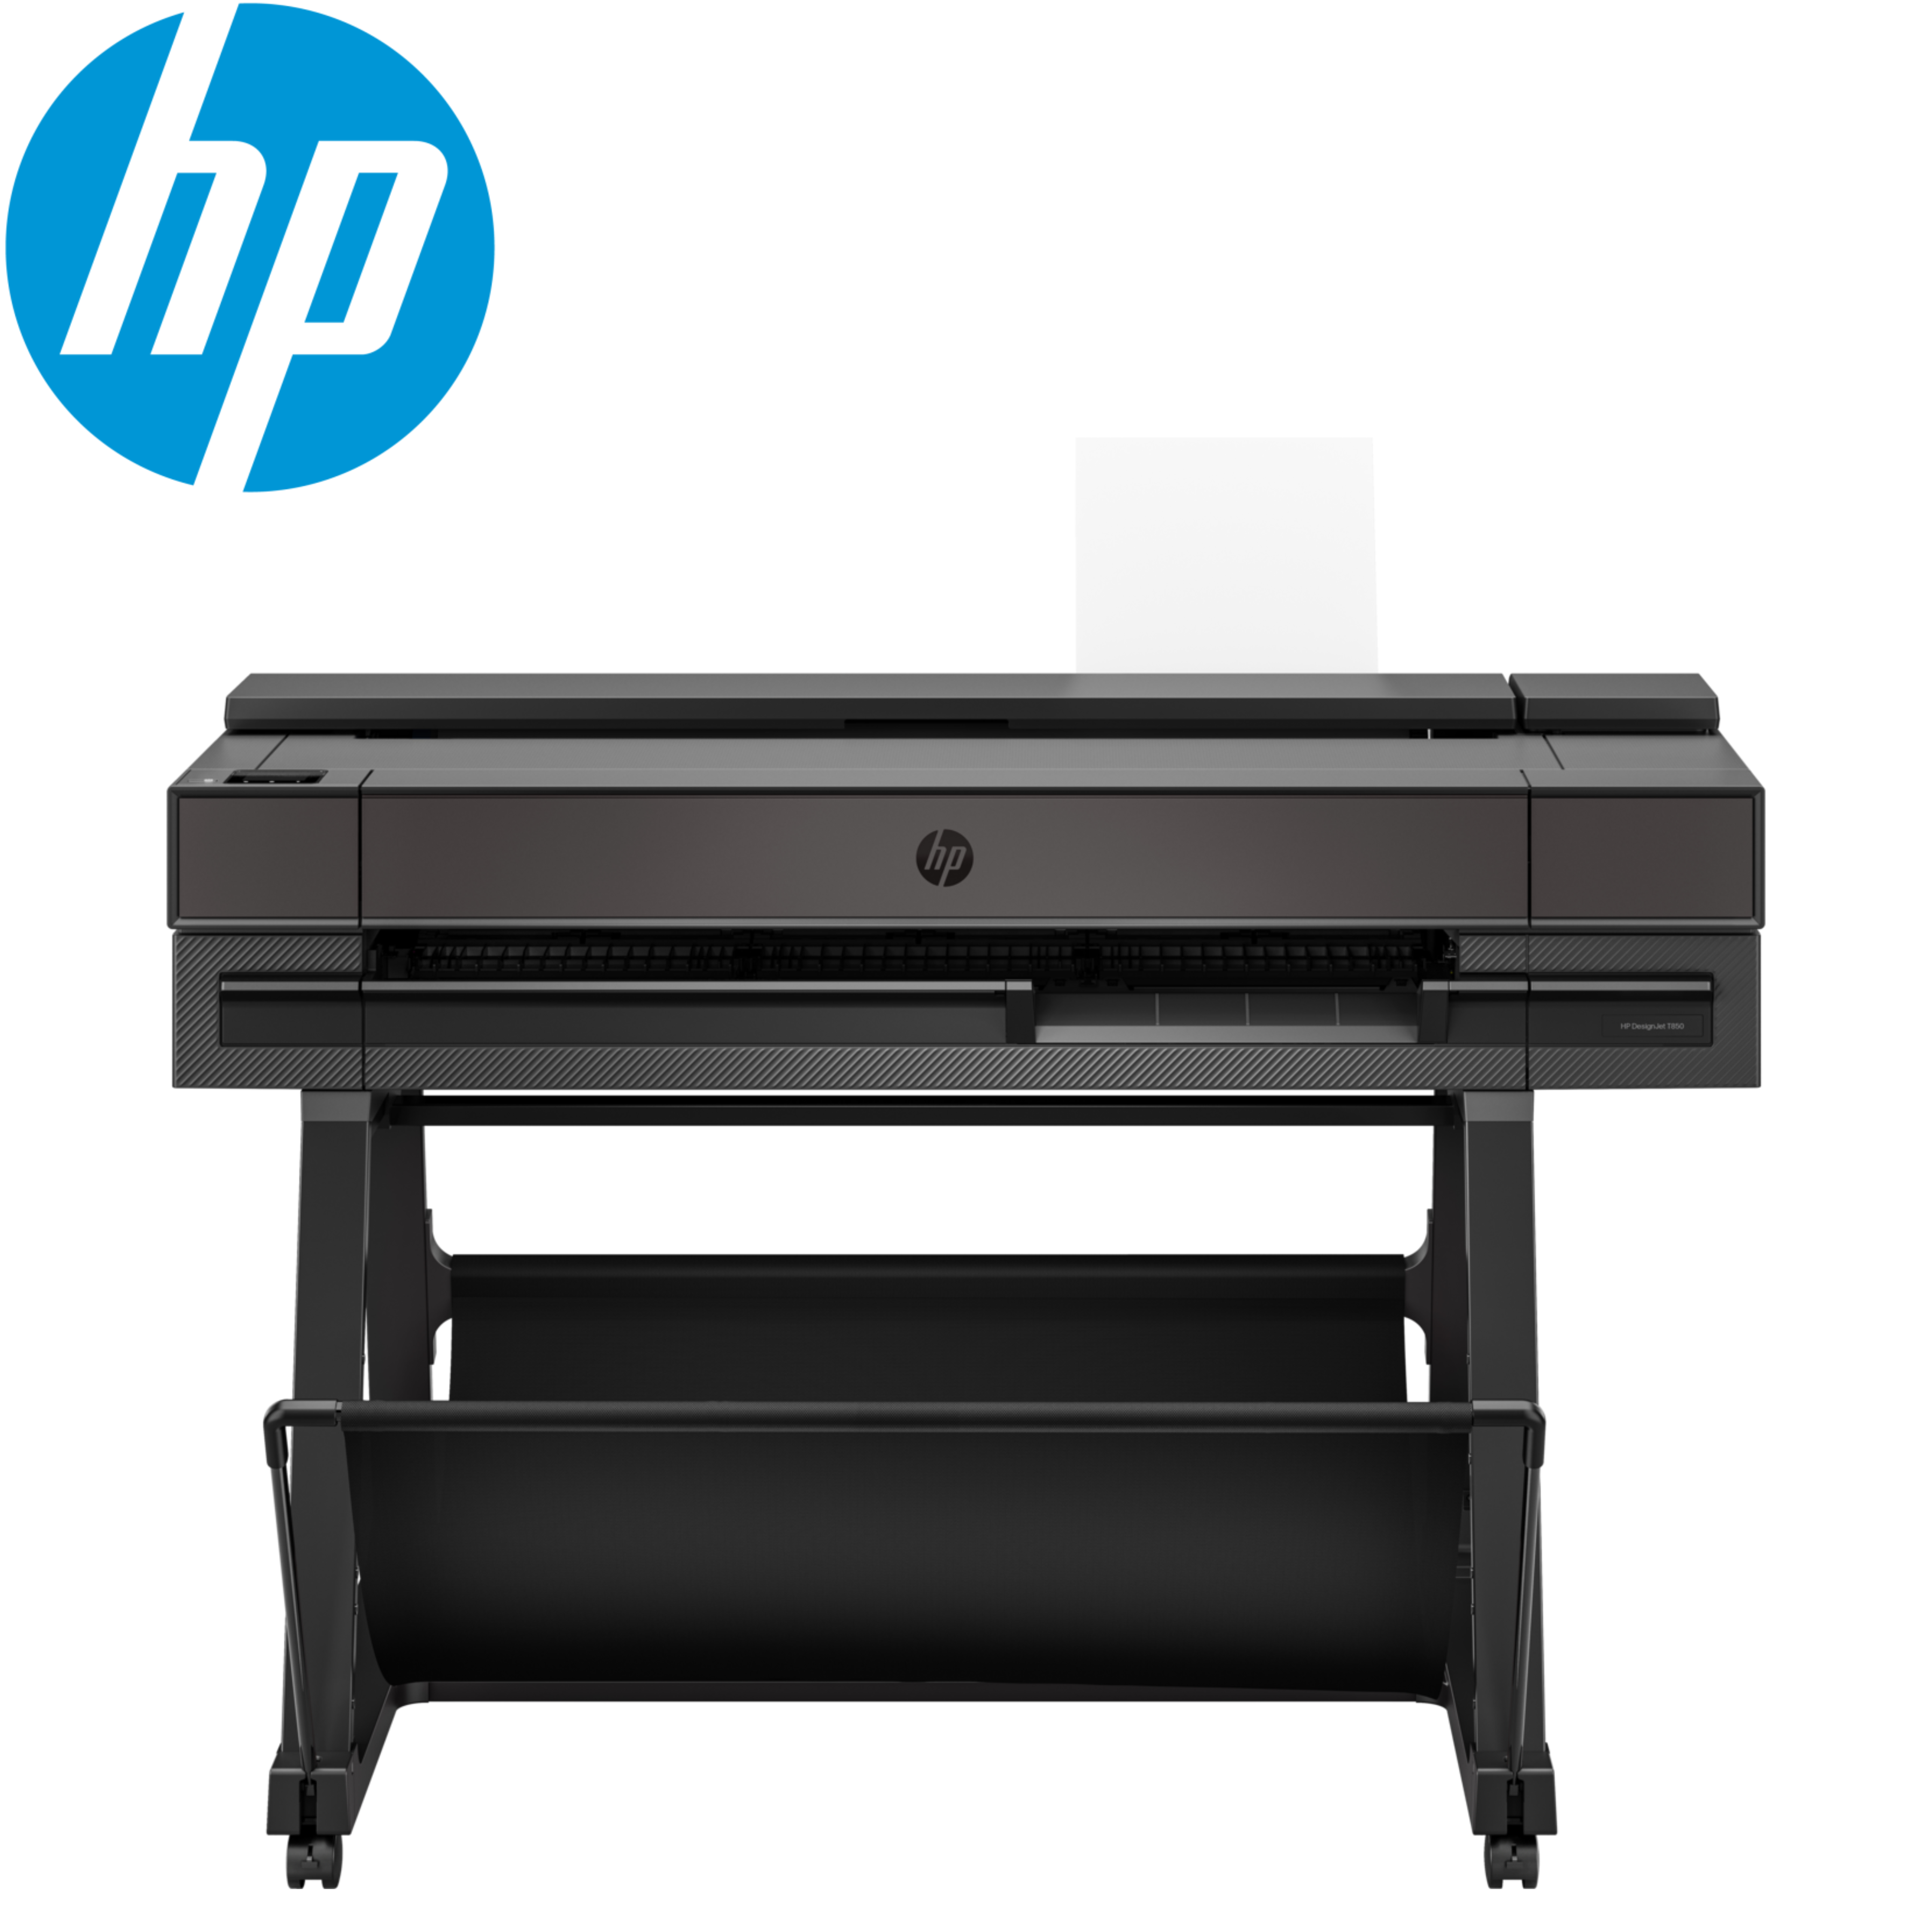 HP DesignJet T850 36-In Printer (A0)